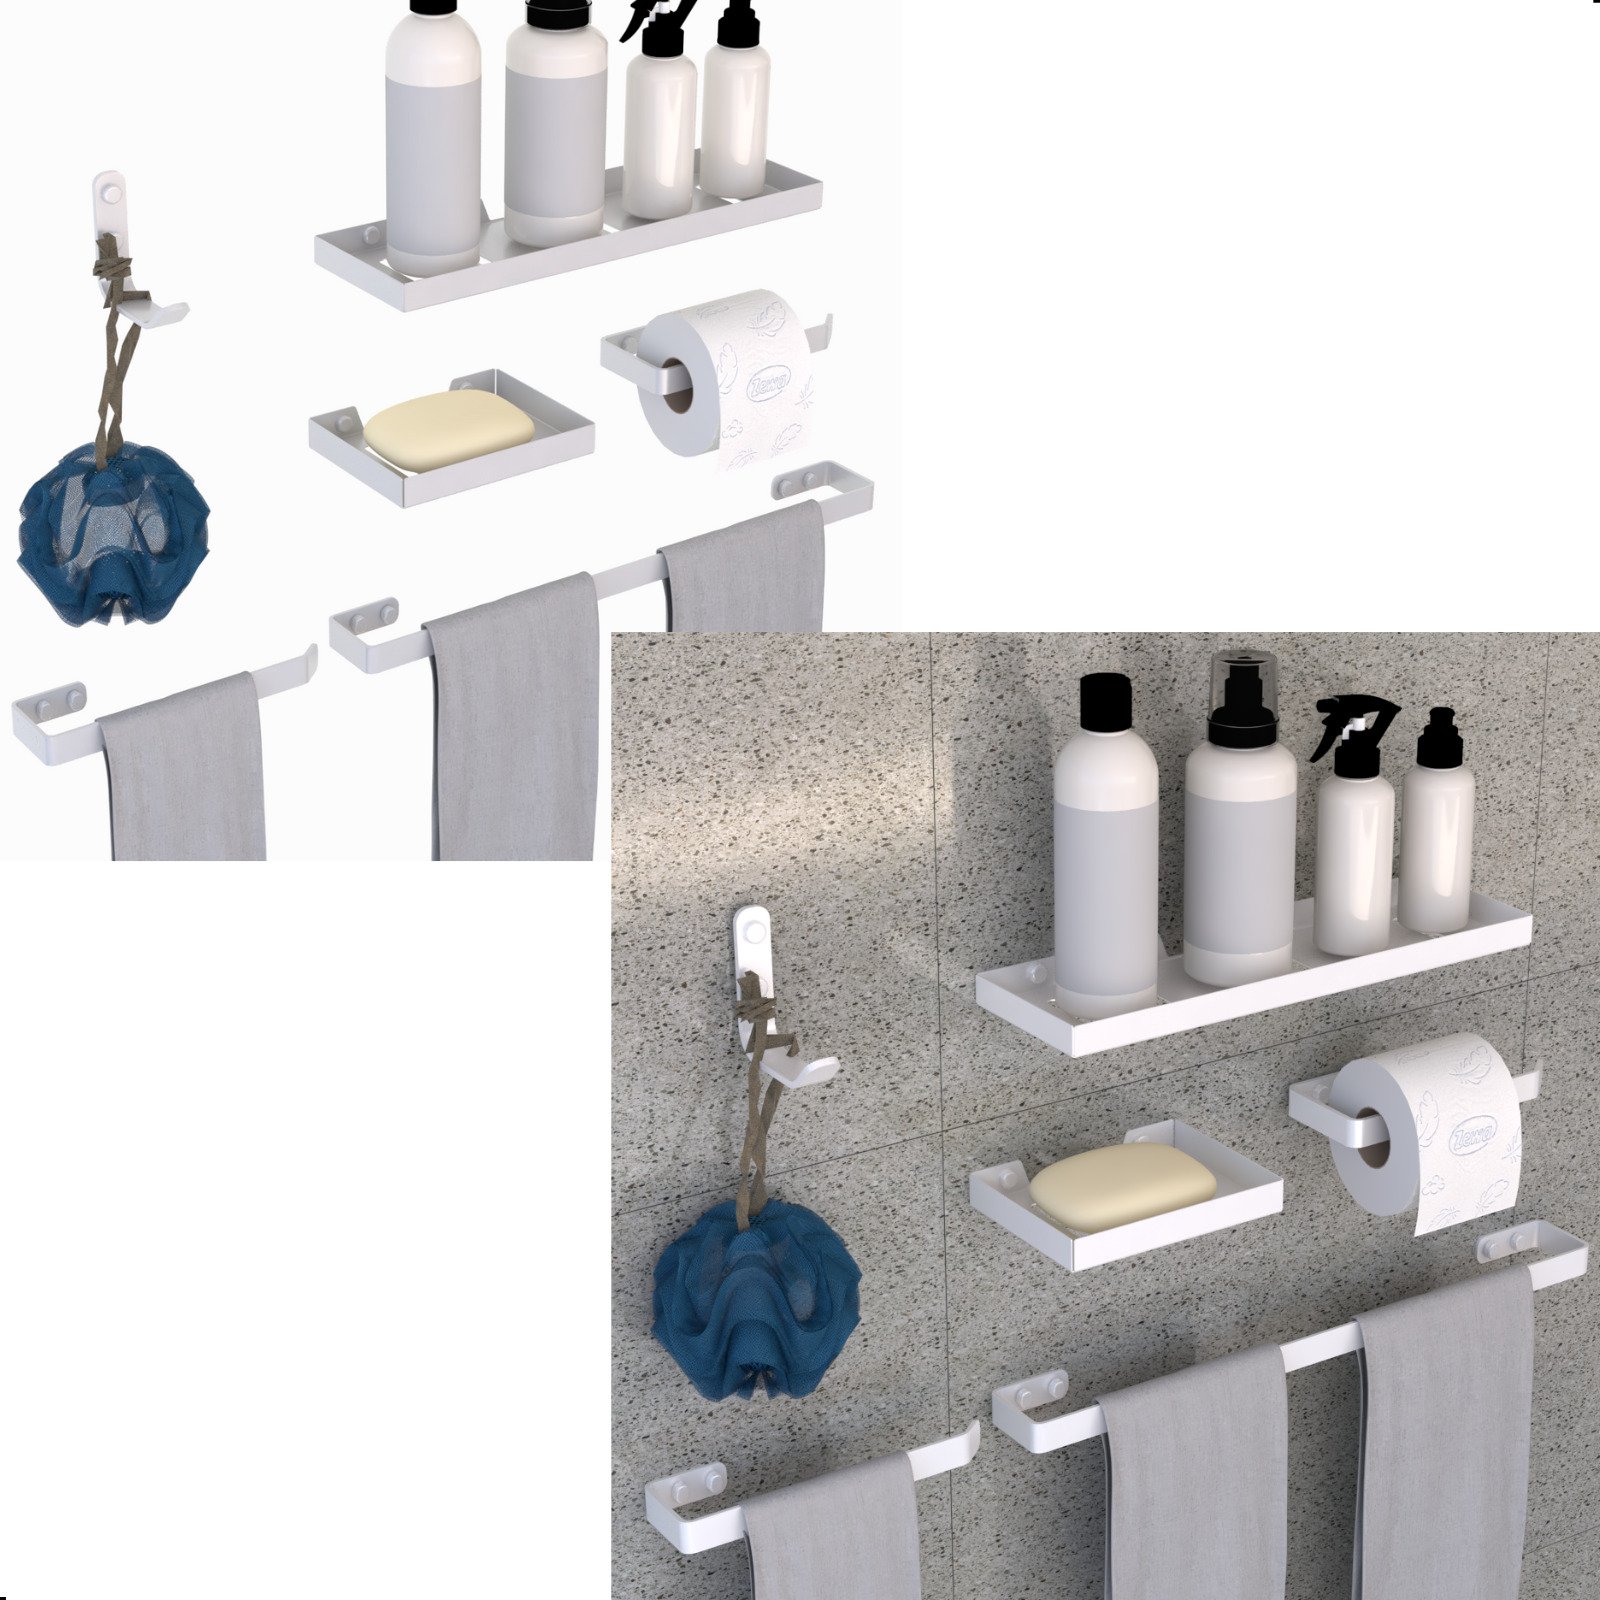 Kit Acessórios Banheiro 6 Peças Luxo Quadrado:branco - 2